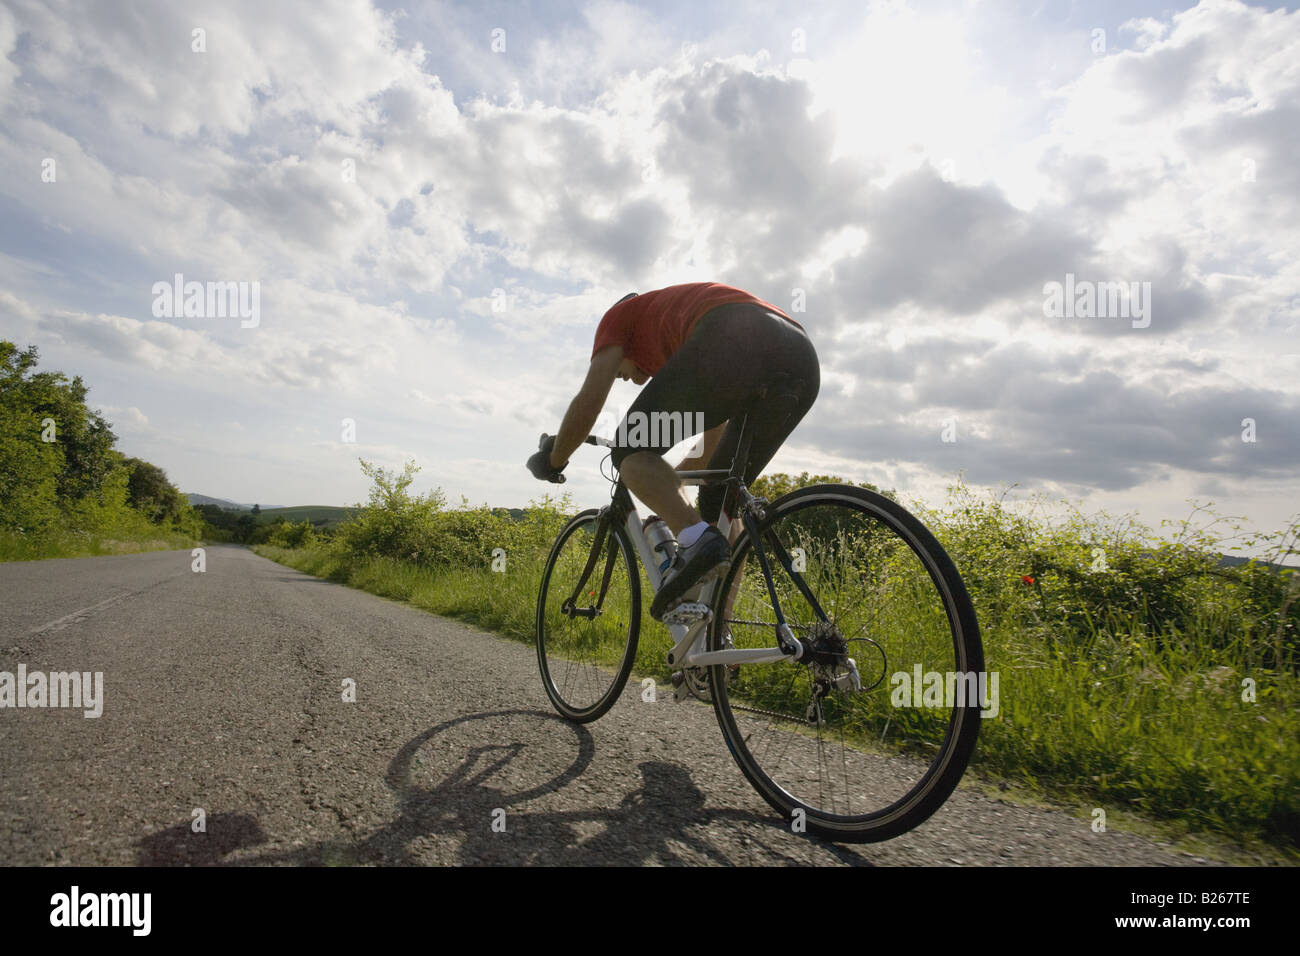 Vista trasera de un hombre ciclismo en carretera con cielo nublado Foto de stock